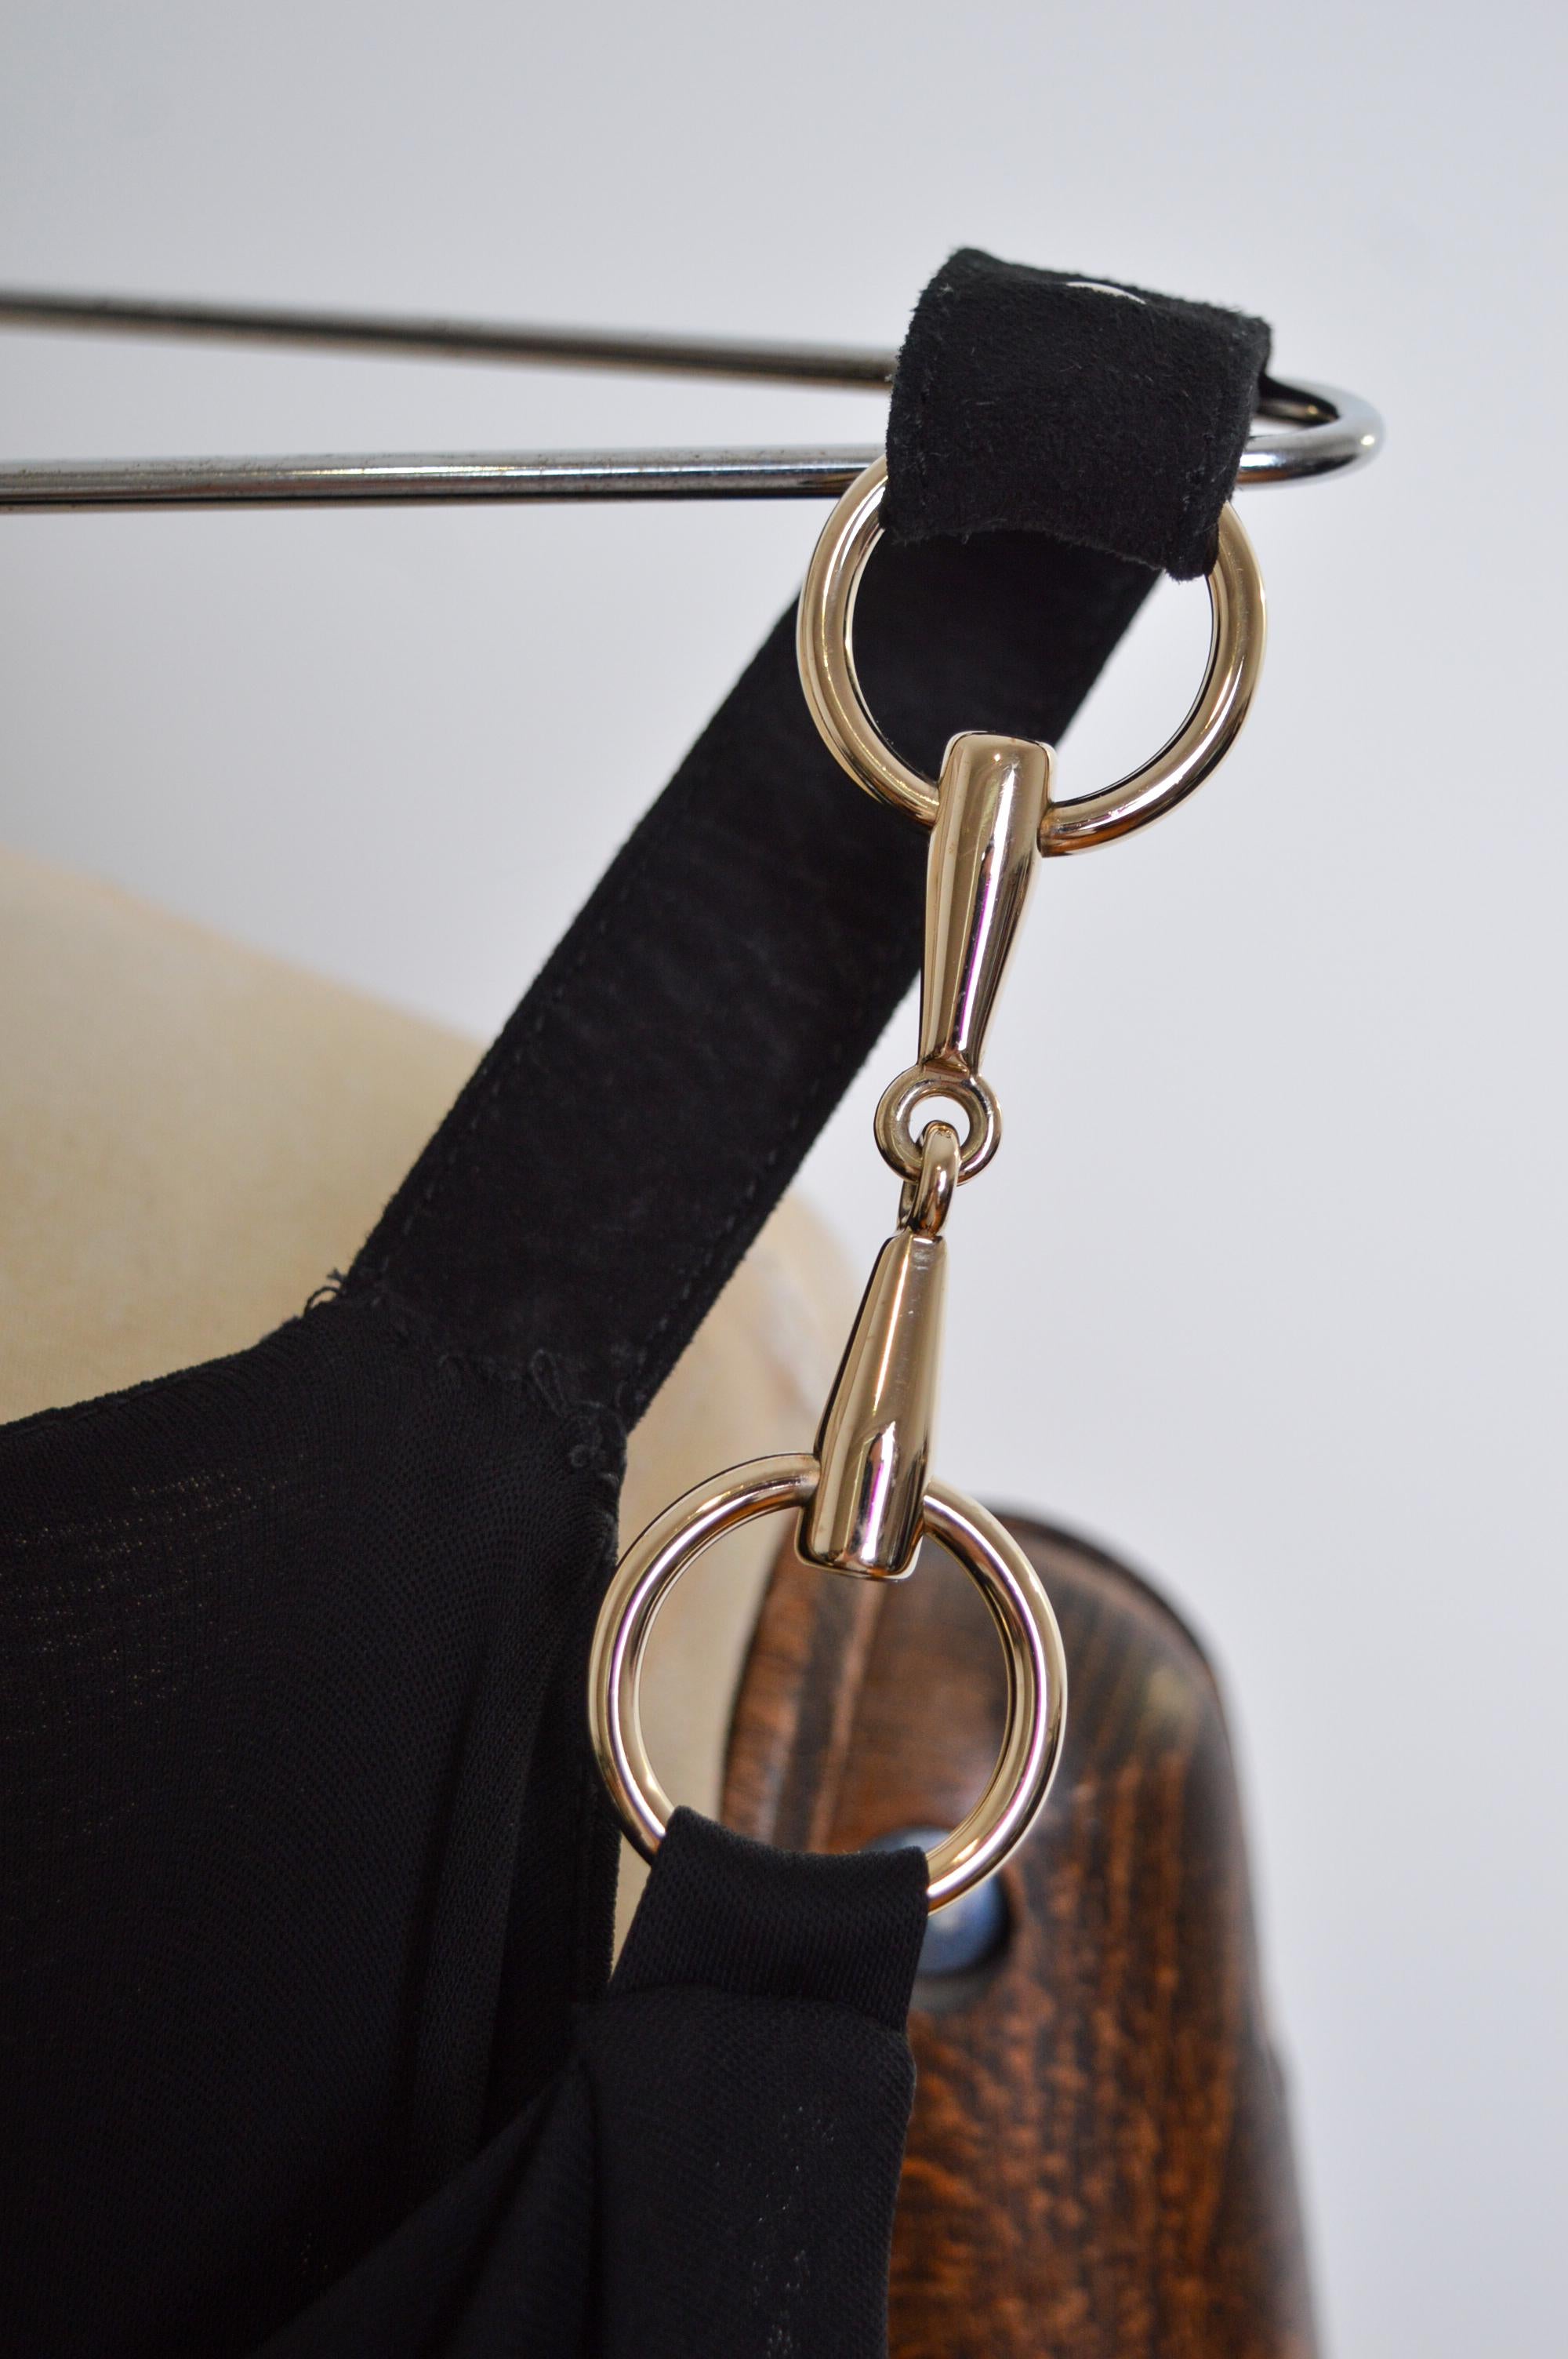 Wunderschönes schwarzes und verchromtes Vintage Tom Ford Ära GUCCI Minikleid mit Pferdegebiss Details.   

GEFERTIGT IN ITALIEN.   

Die Schulterpartie kann über die Schulter oder über den Oberarm getragen werden.

Die Maße sind in Zoll